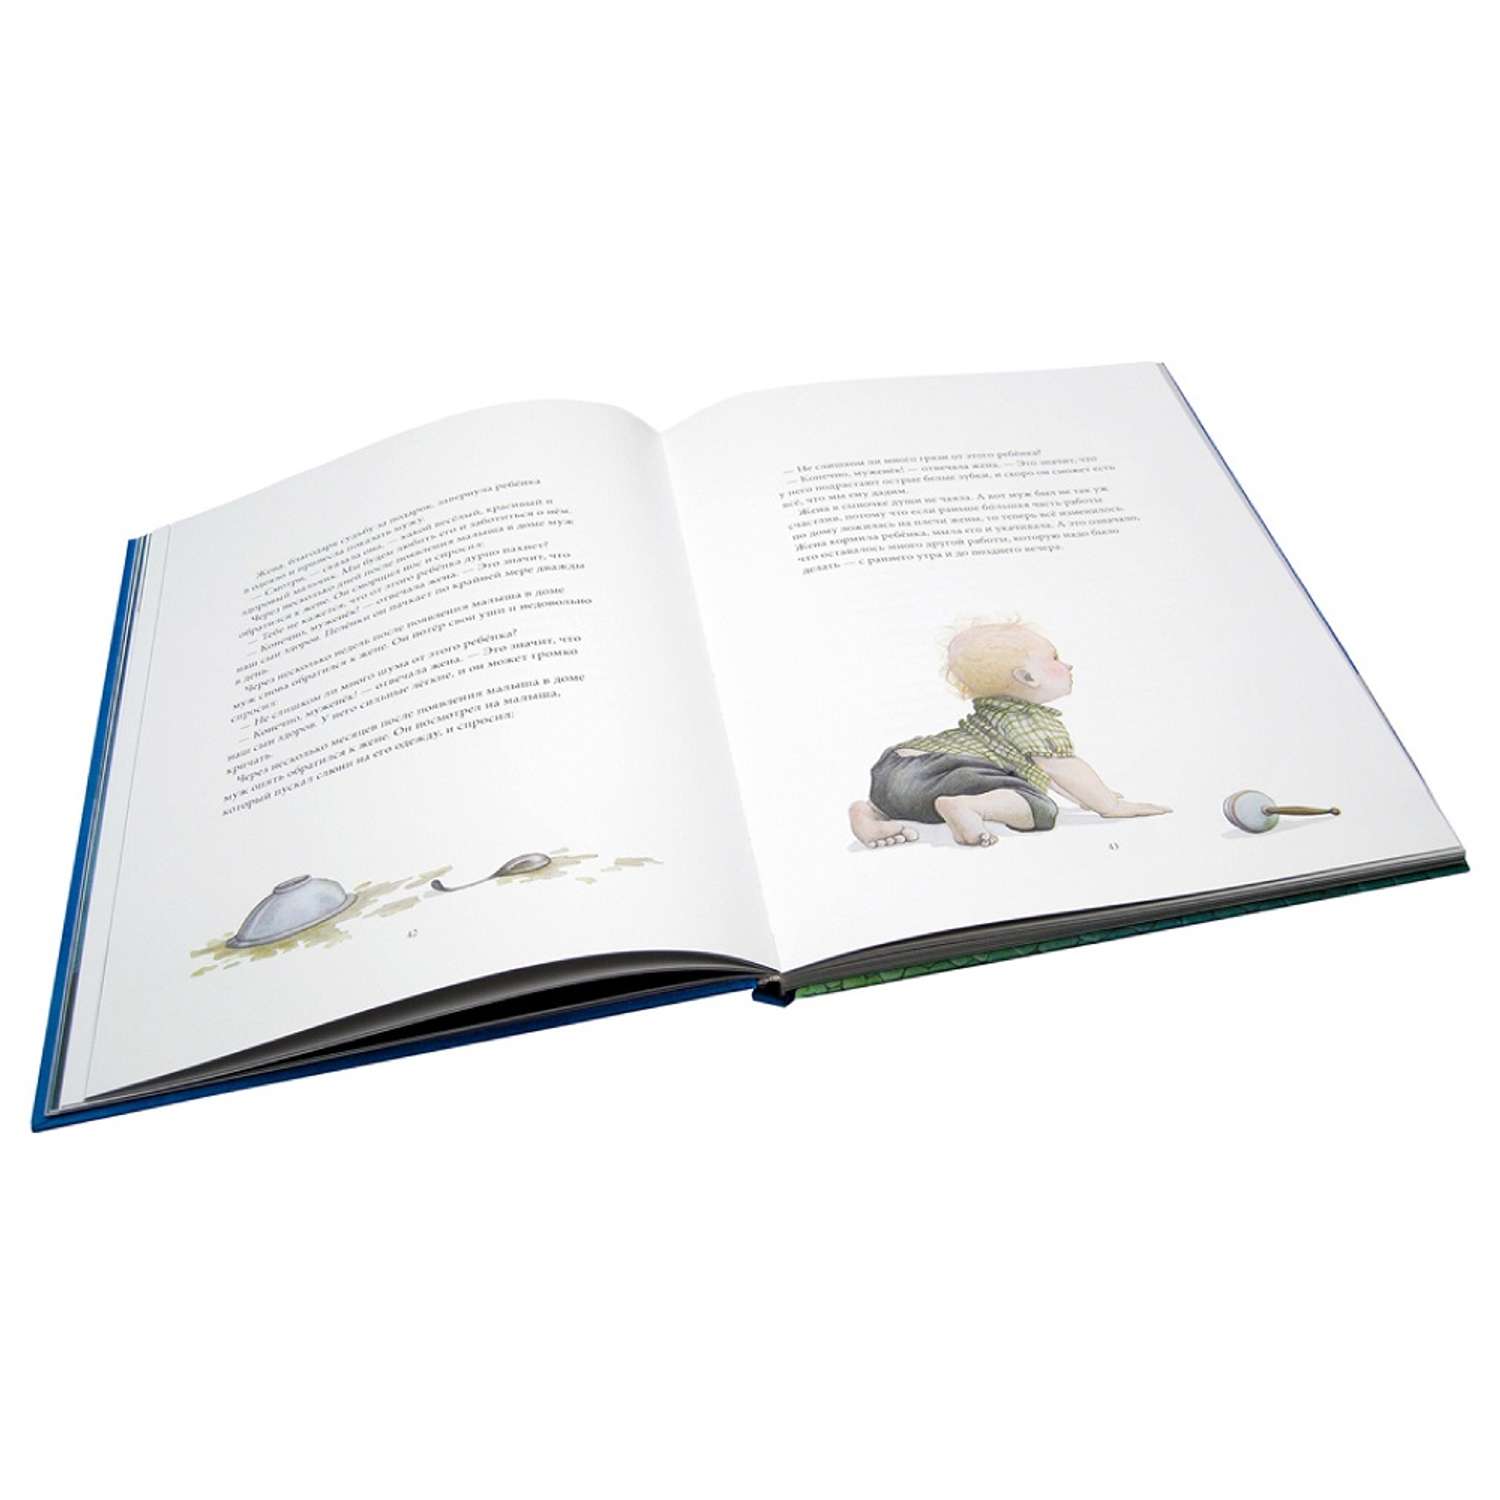 Бреслин Тереза / Добрая книга / Сказки и легенды Шотландии / Книга 1 / иллюстрации Кейт Липер - фото 6